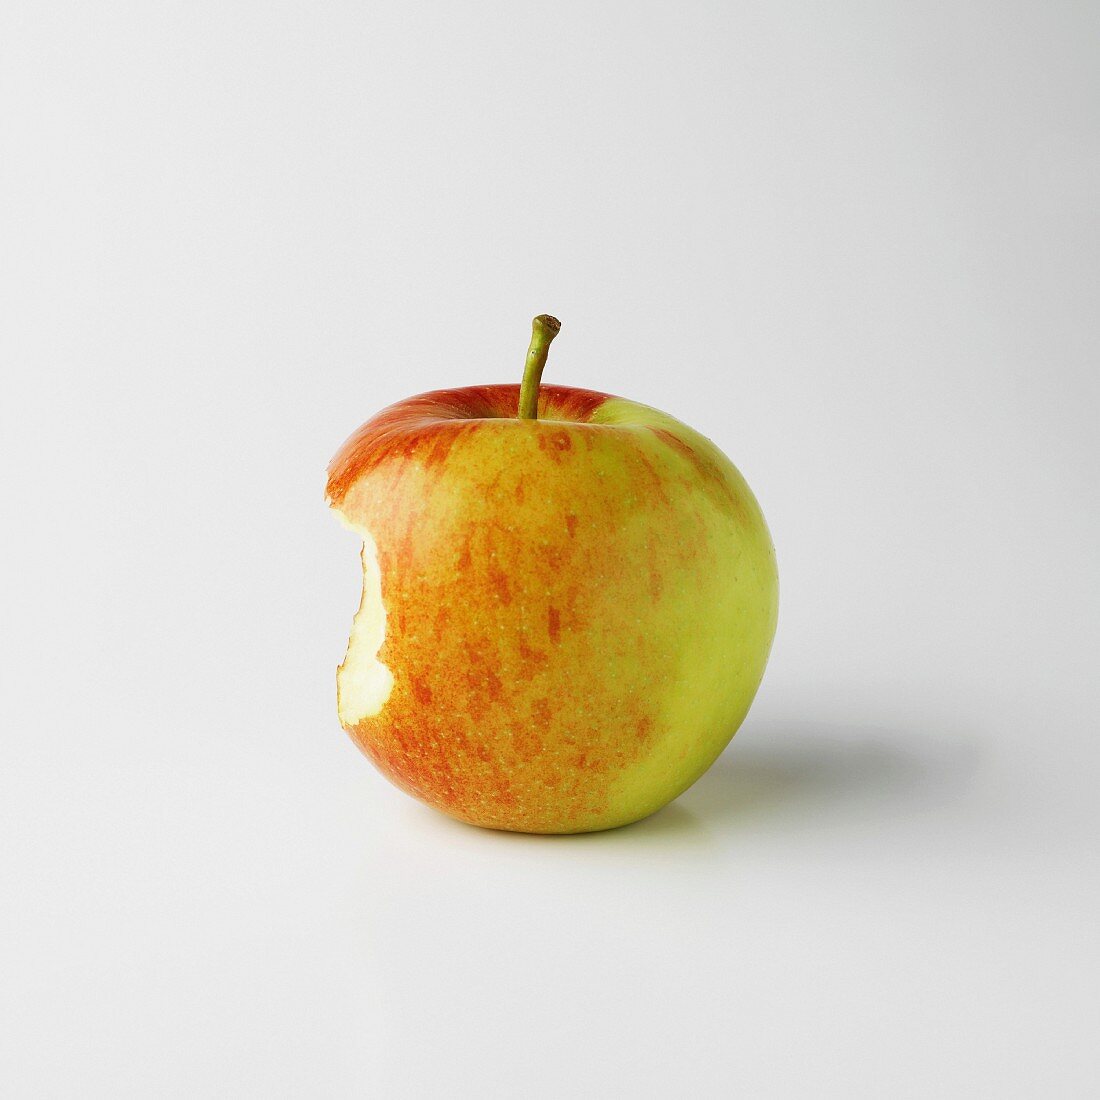 Angebissener Apfel auf weißem Grund